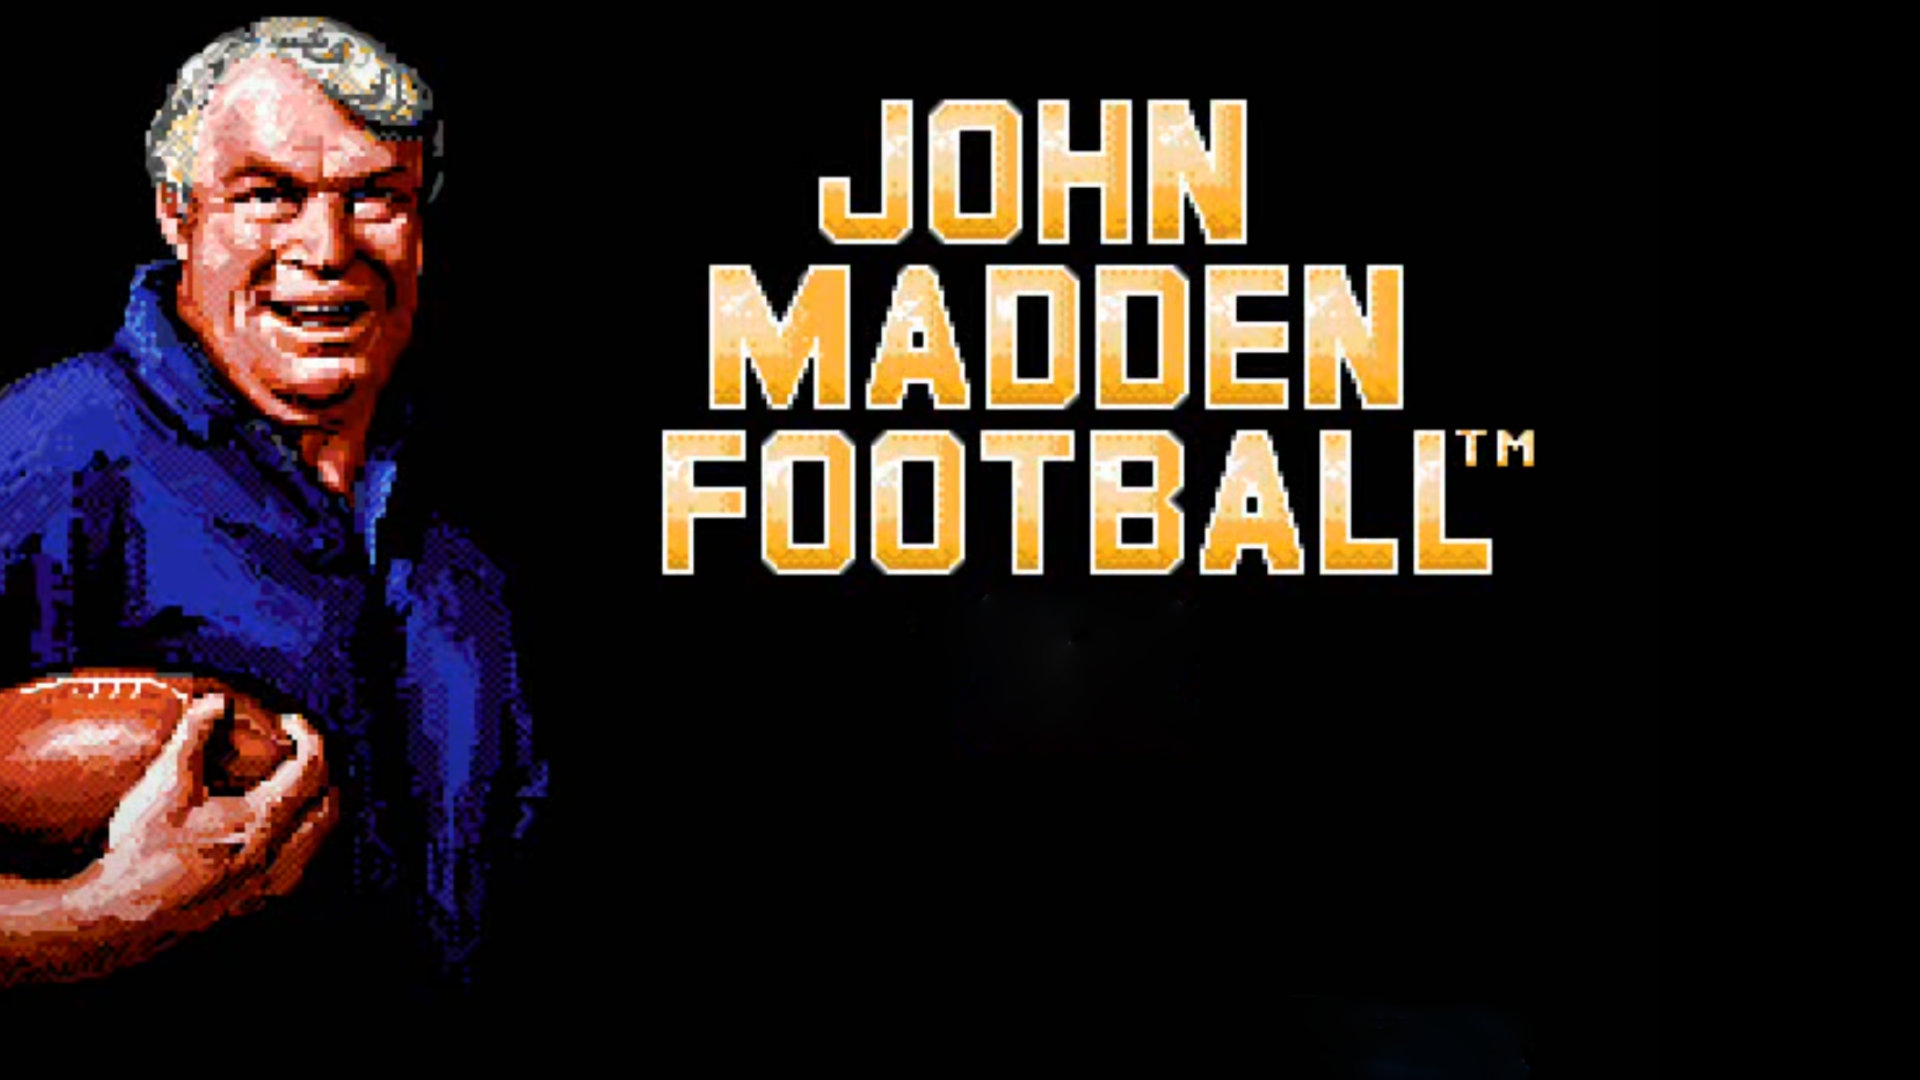 NFL-Coach und Videospiel-Ikone John Madden gestorben